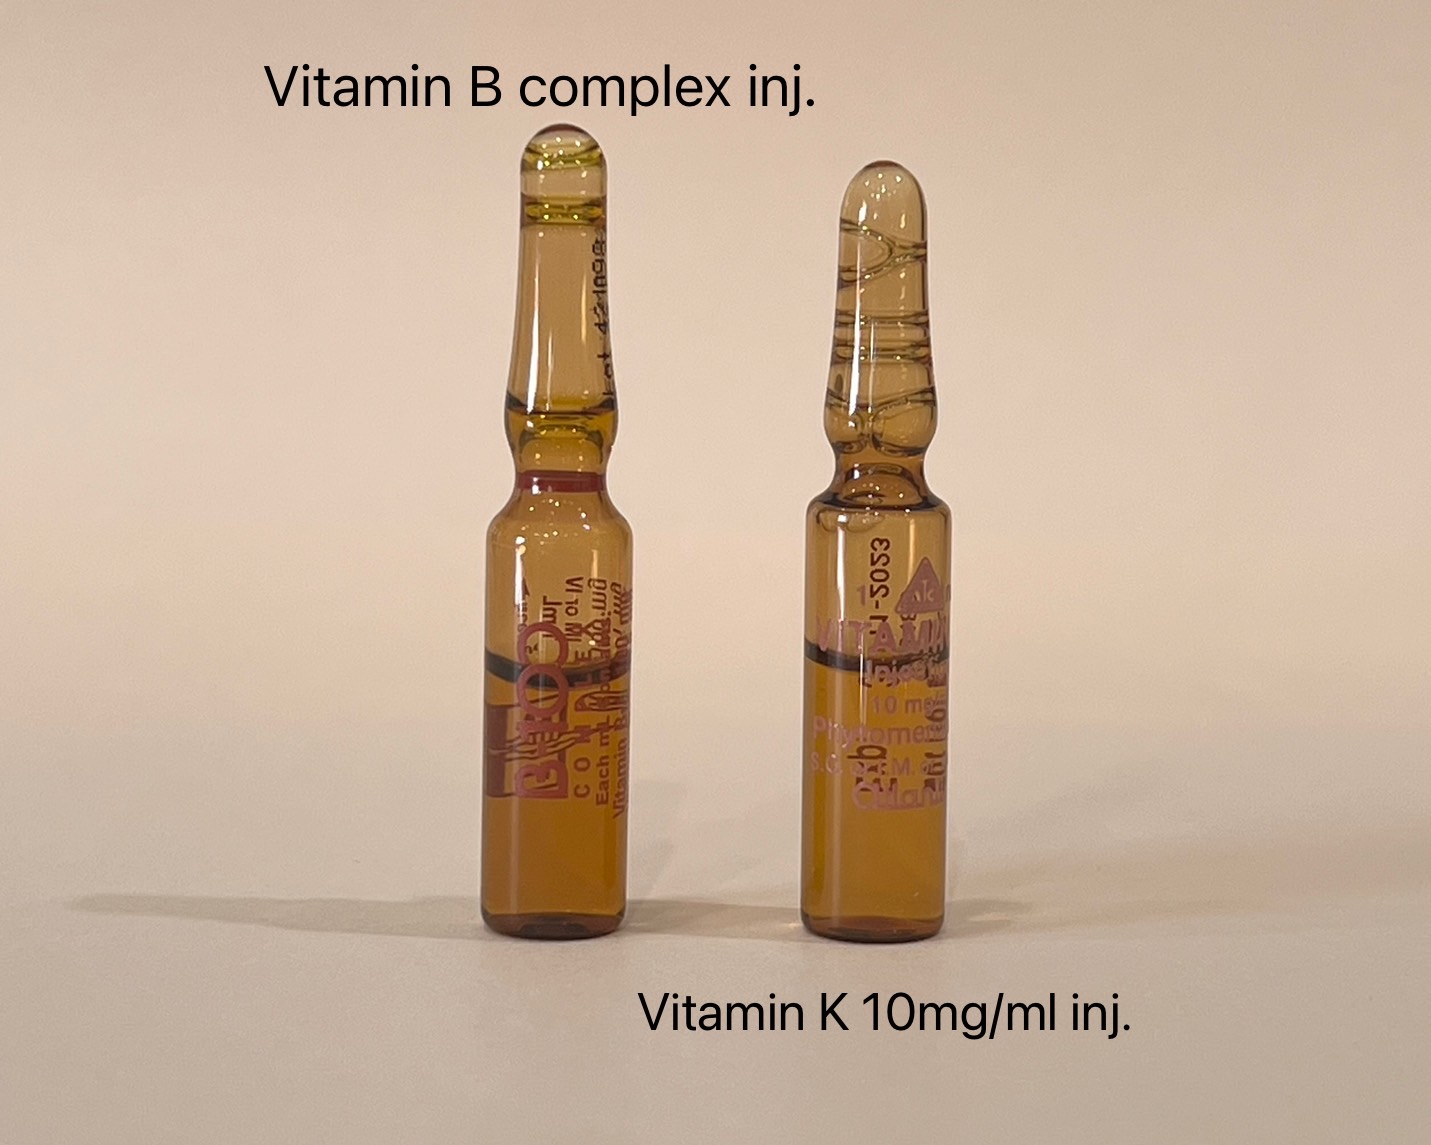 Vitamin B complex inj. มองคล้ายกับ Vitamin K 10mg/ml inj.